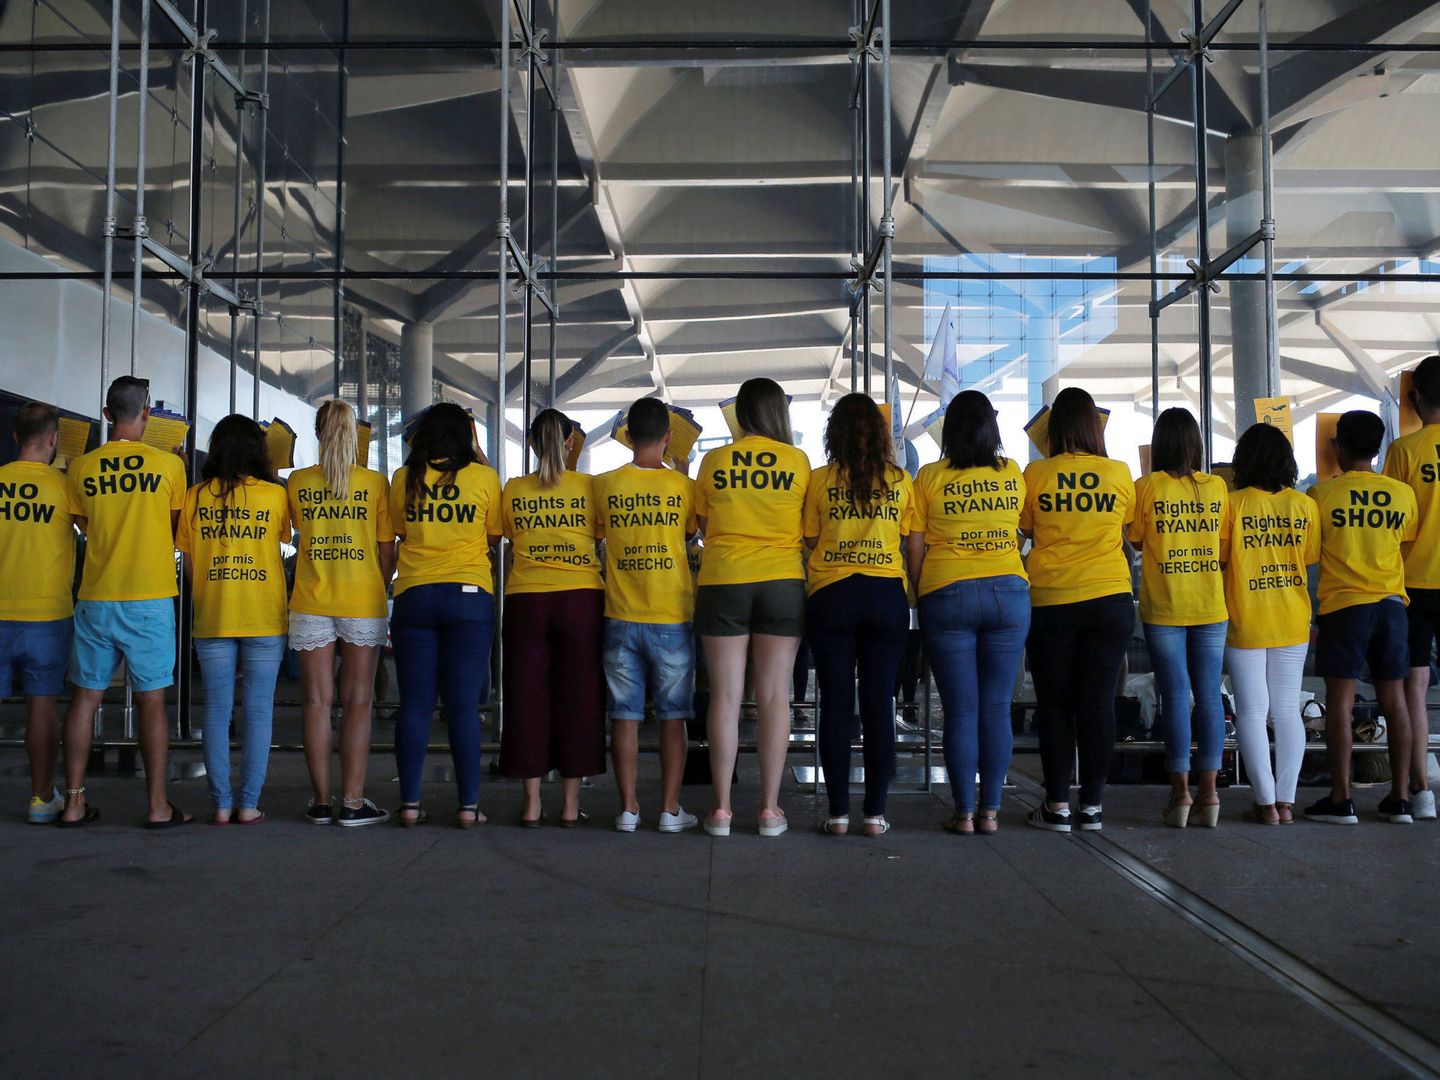 Huelga de empleados de Ryanair en Málaga. (Reuters)